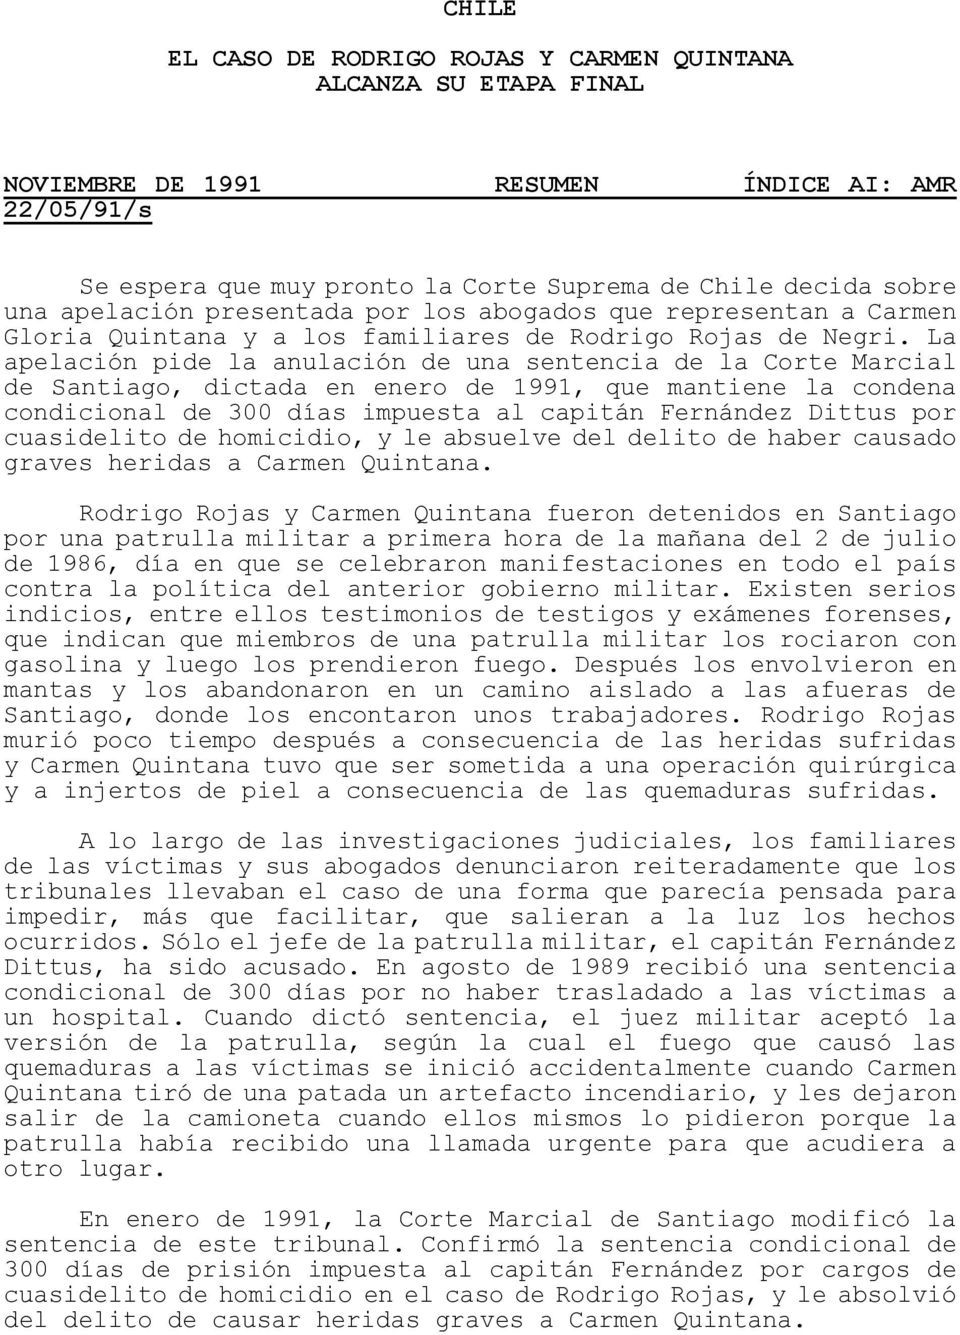 La apelación pide la anulación de una sentencia de la Corte Marcial de Santiago, dictada en enero de 1991, que mantiene la condena condicional de 300 días impuesta al capitán Fernández Dittus por